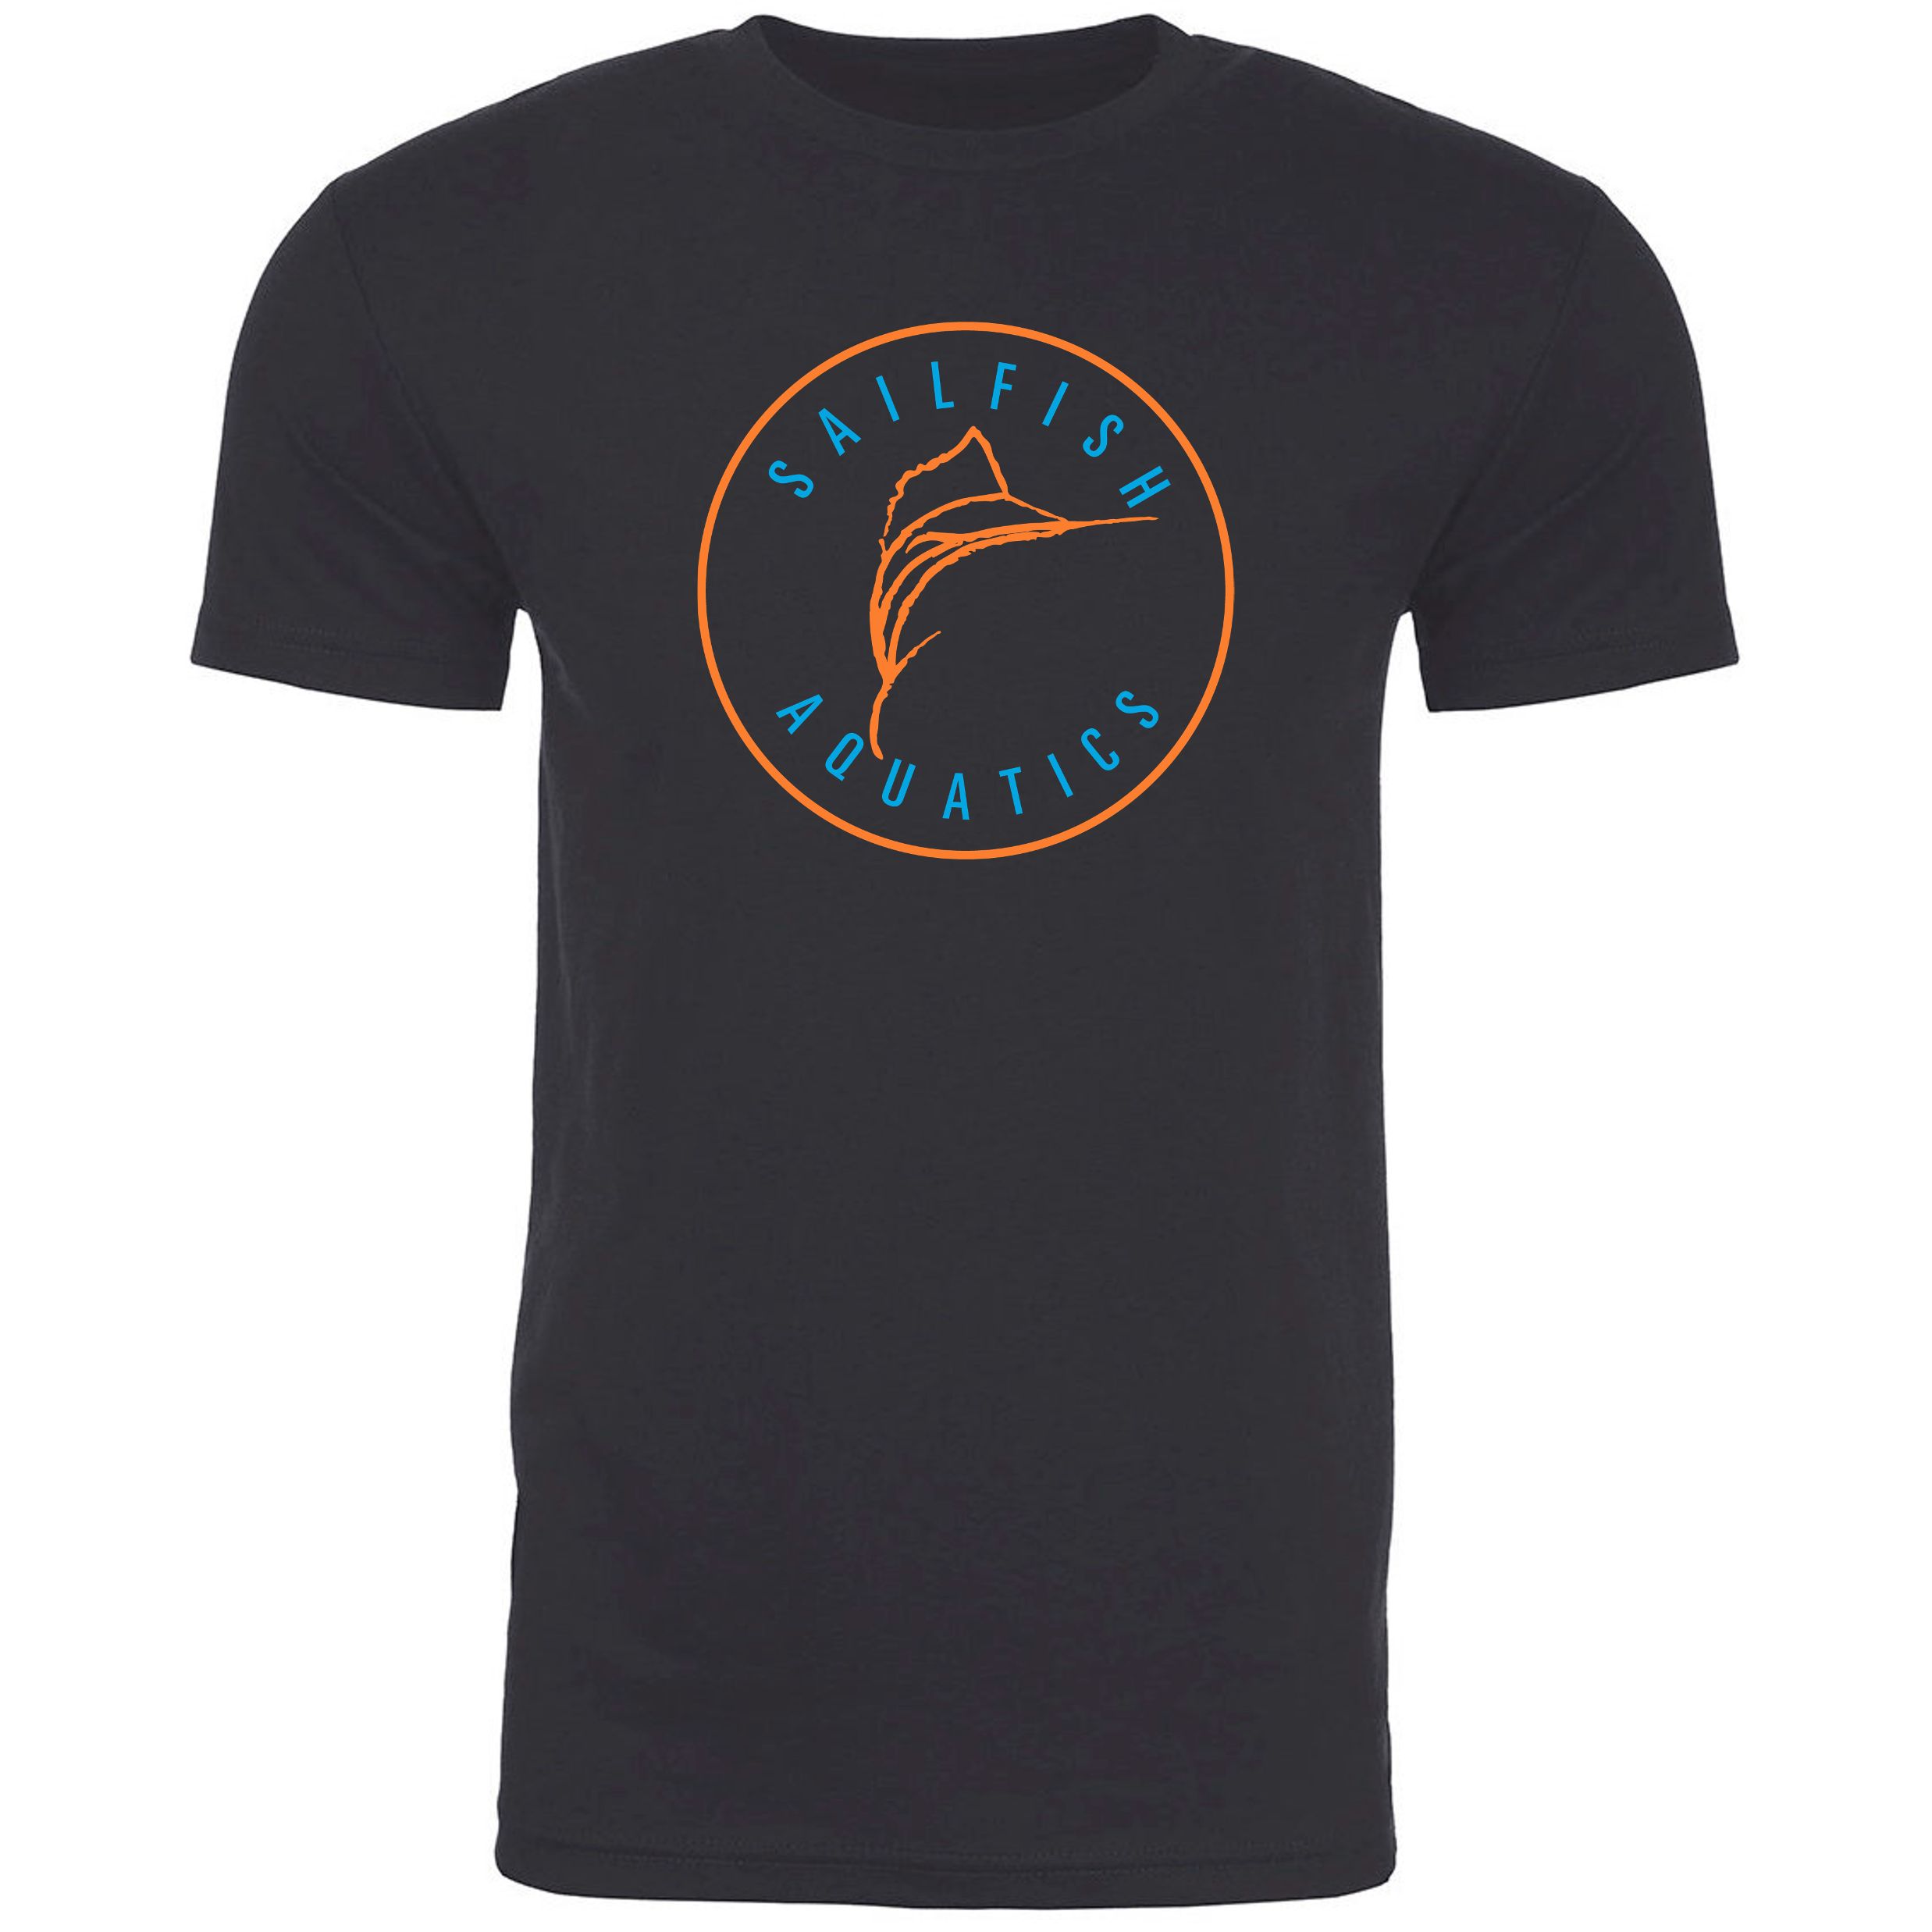 Team T-Shirt  - Sailfish